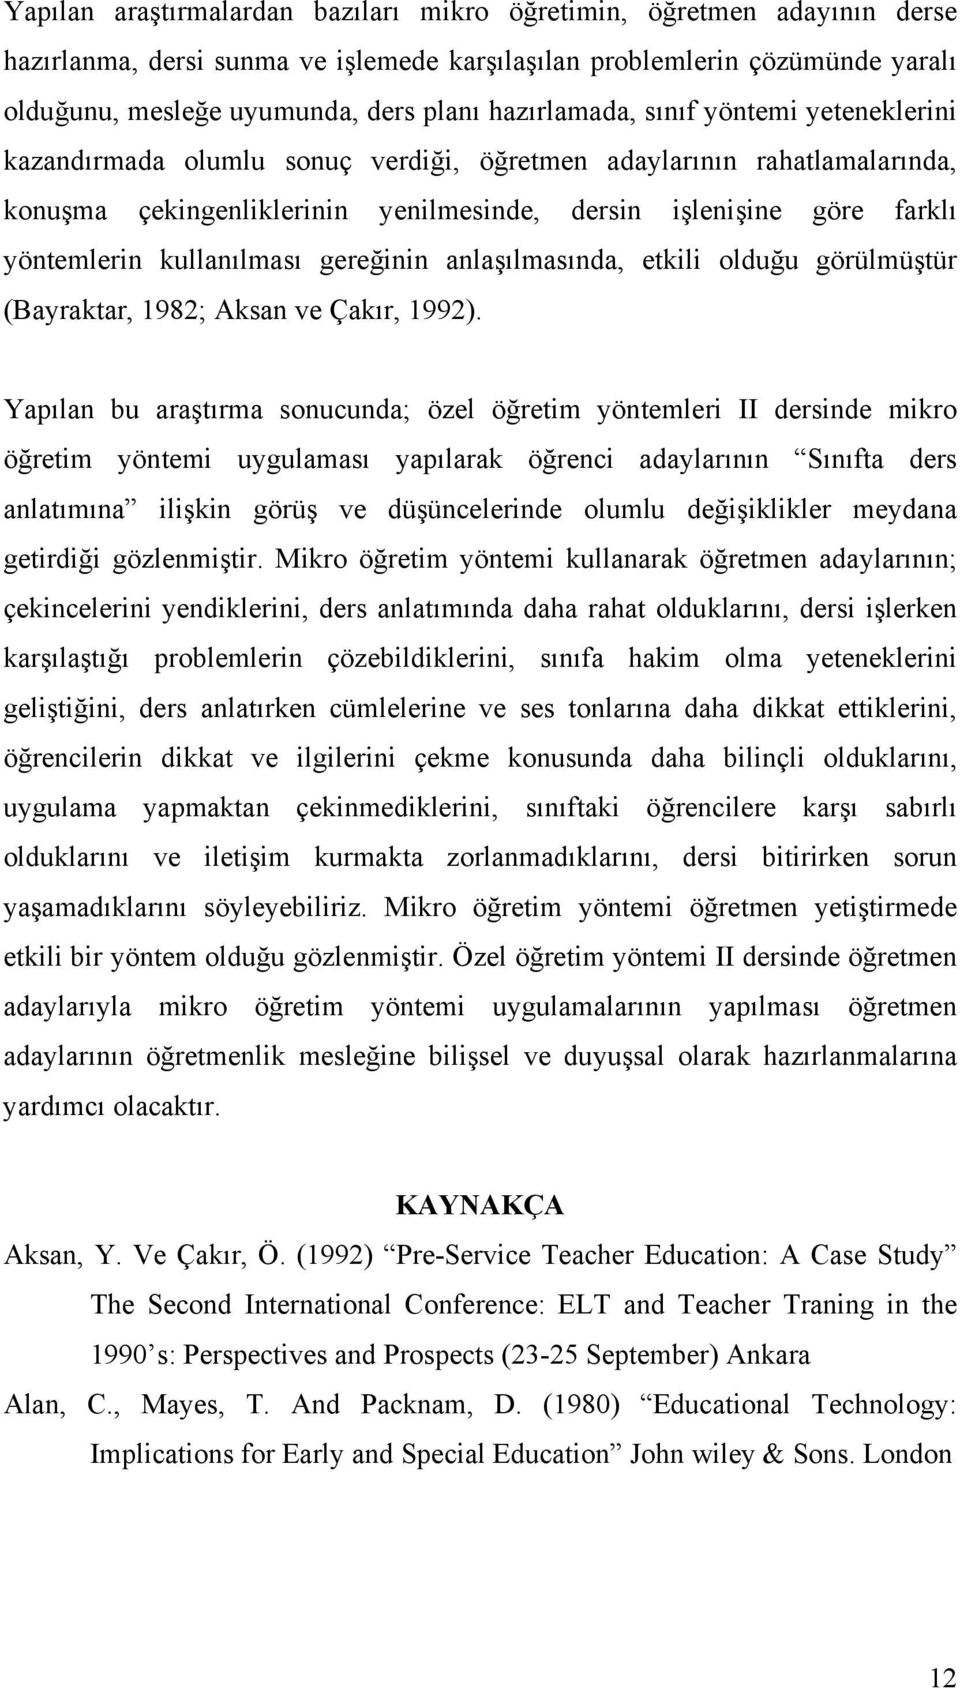 kullanılması gereğinin anlaşılmasında, etkili olduğu görülmüştür (Bayraktar, 1982; Aksan ve Çakır, 1992).